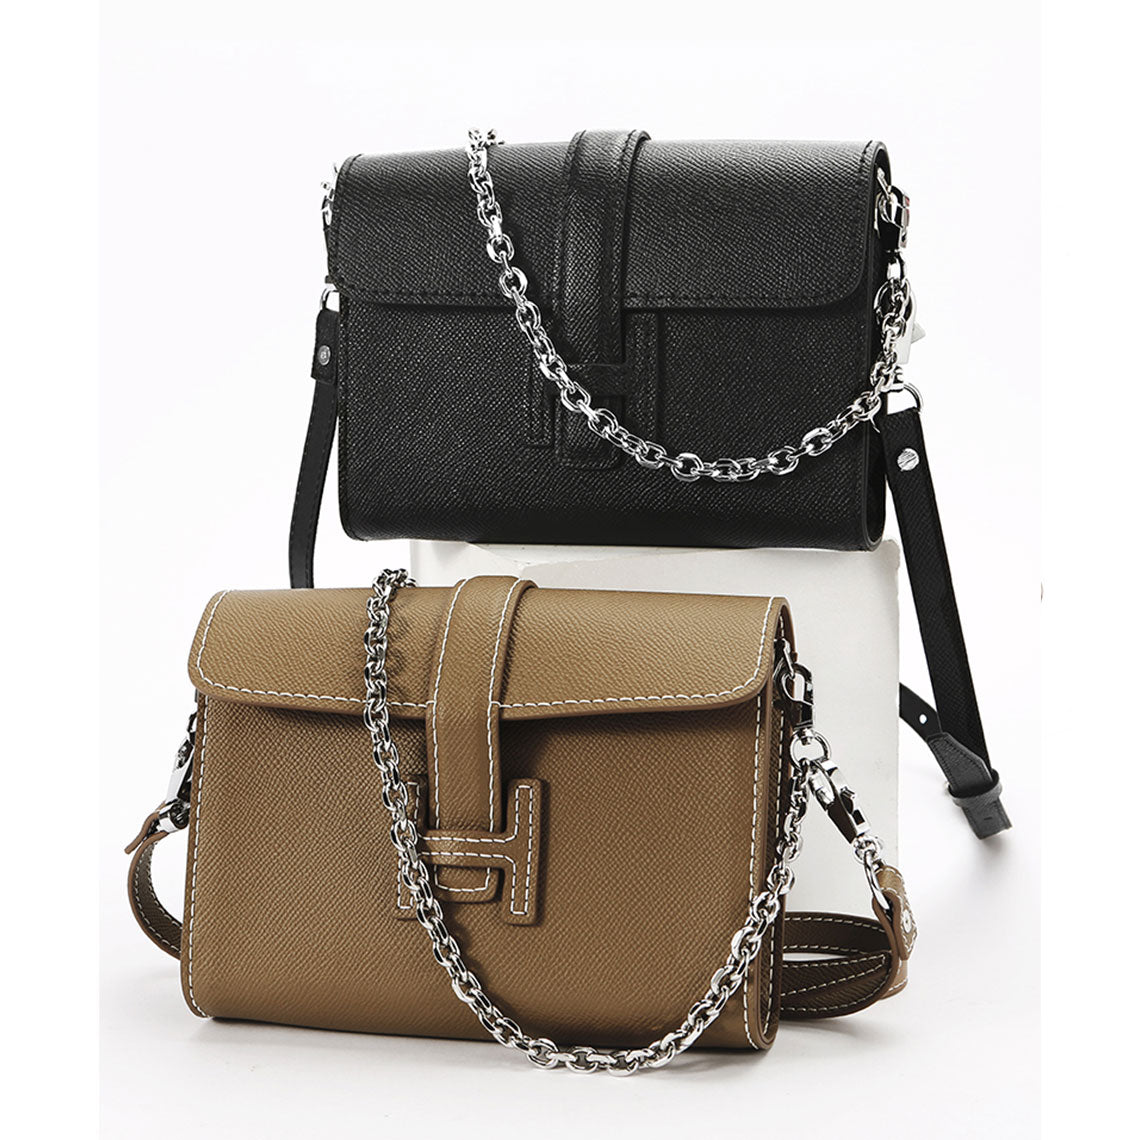 H Bag Color - Black Tan Inspired Hermes Bag | POPSEWING™